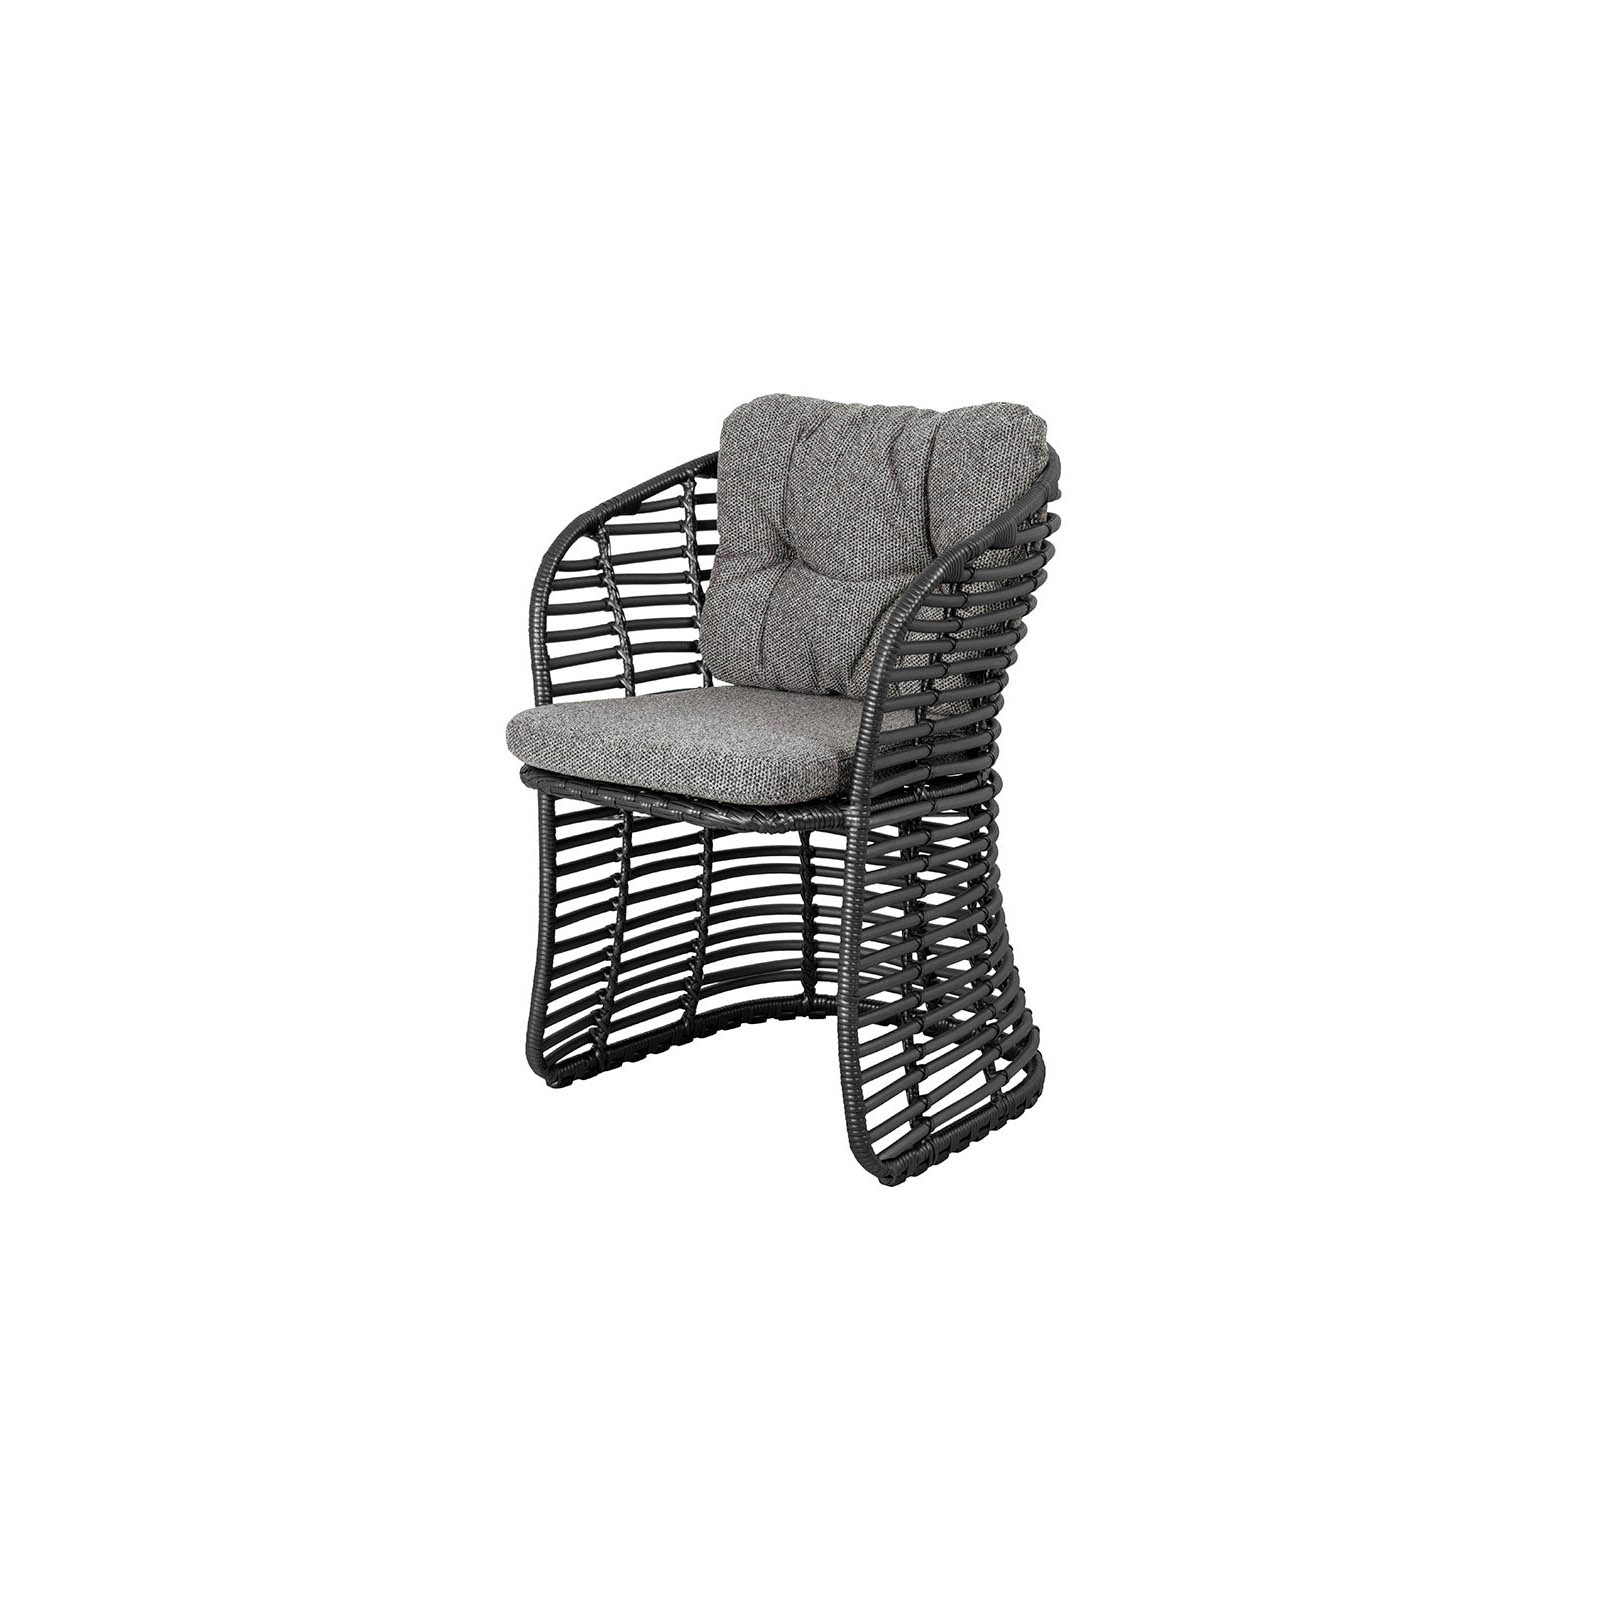 Sessel Basket aus CL Weave in Graphite mit Kissen aus CL Wove in Dark Grey